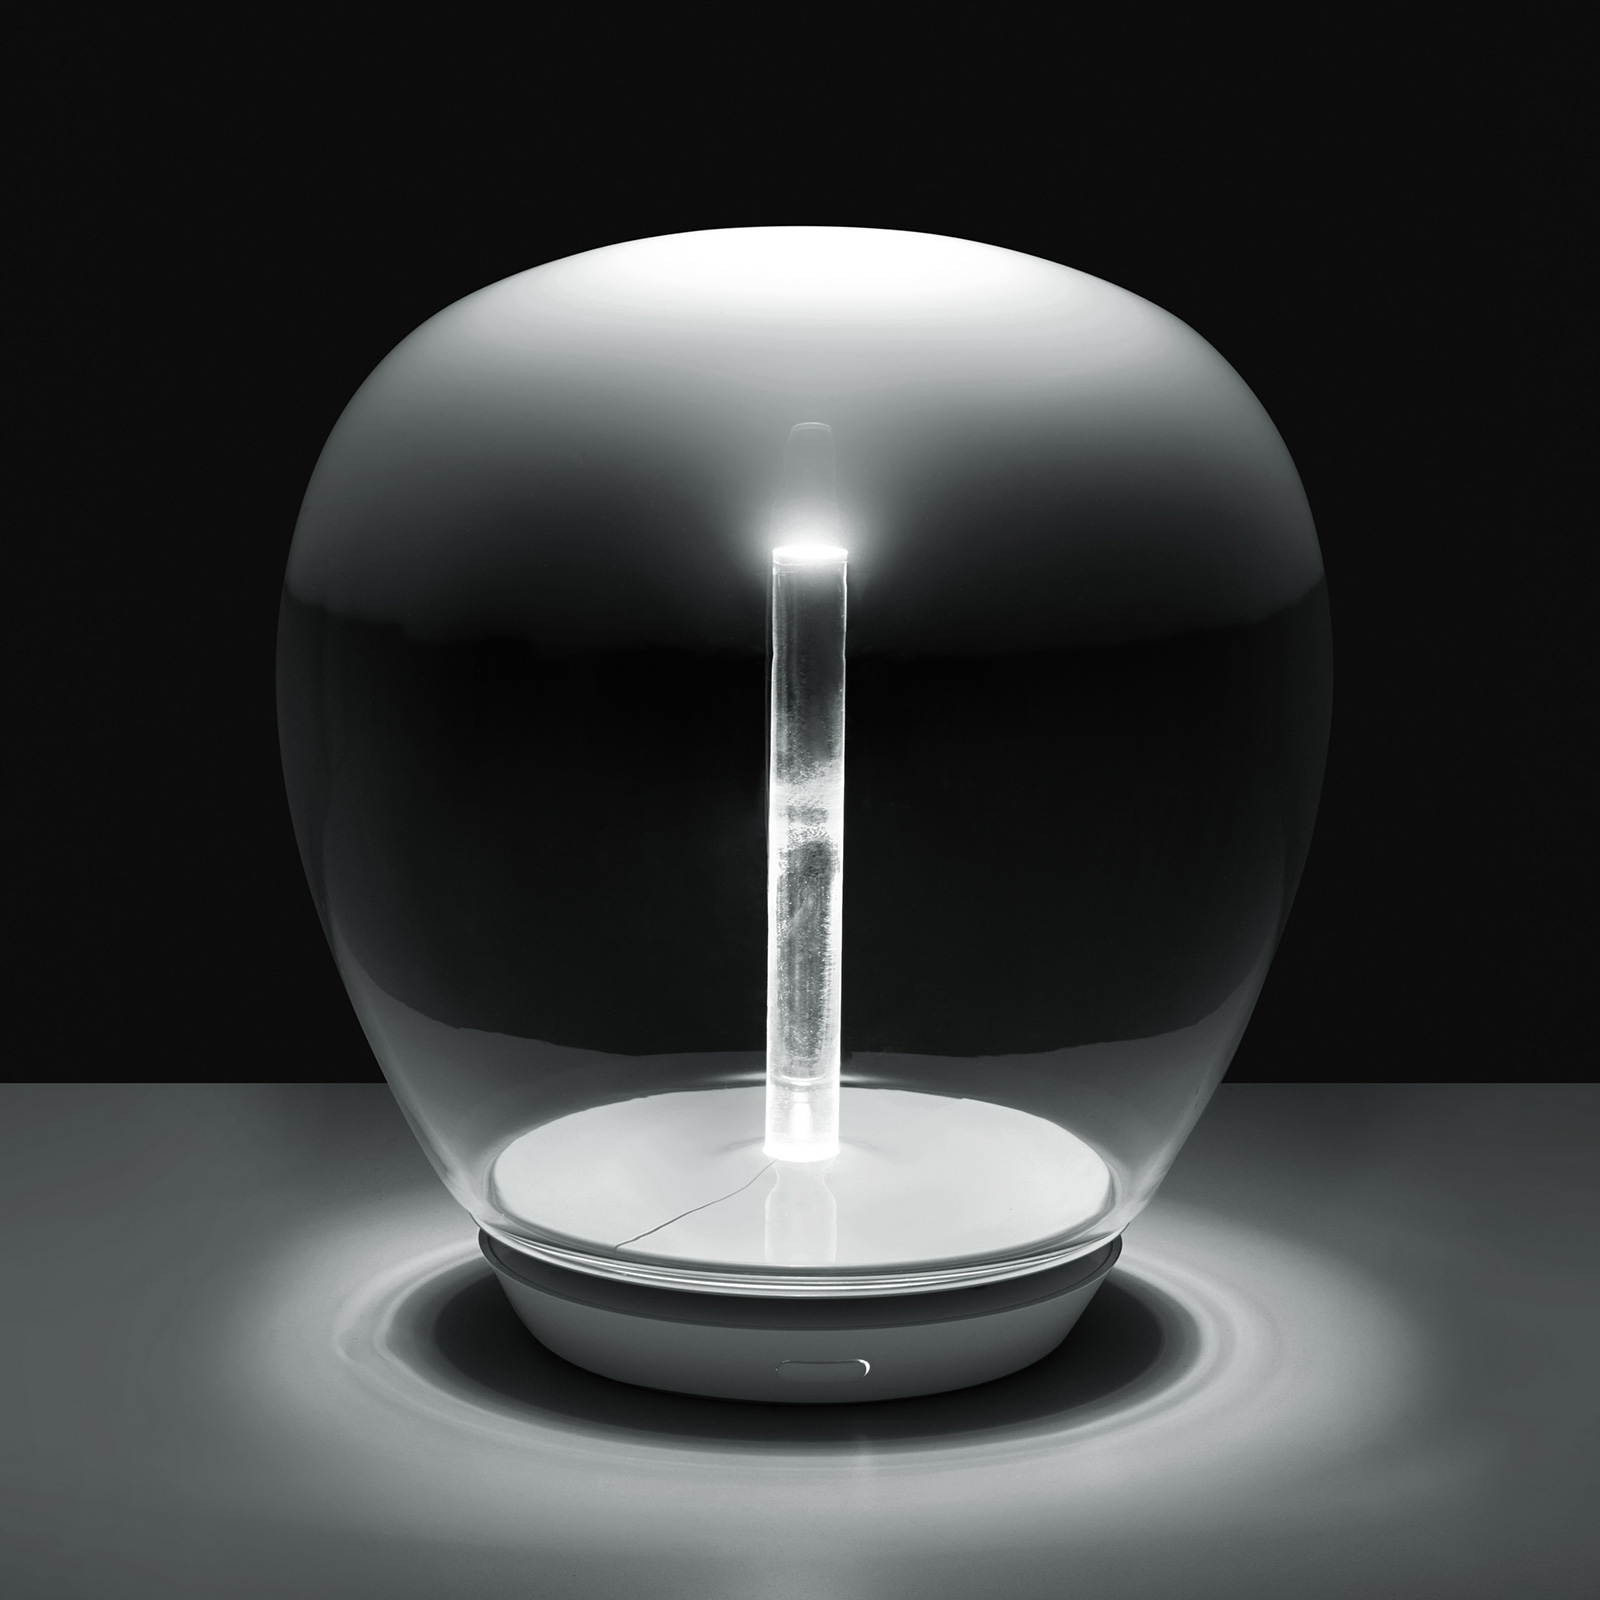 Artemide Empatia glasbordlampe med LED, Ø 26 cm